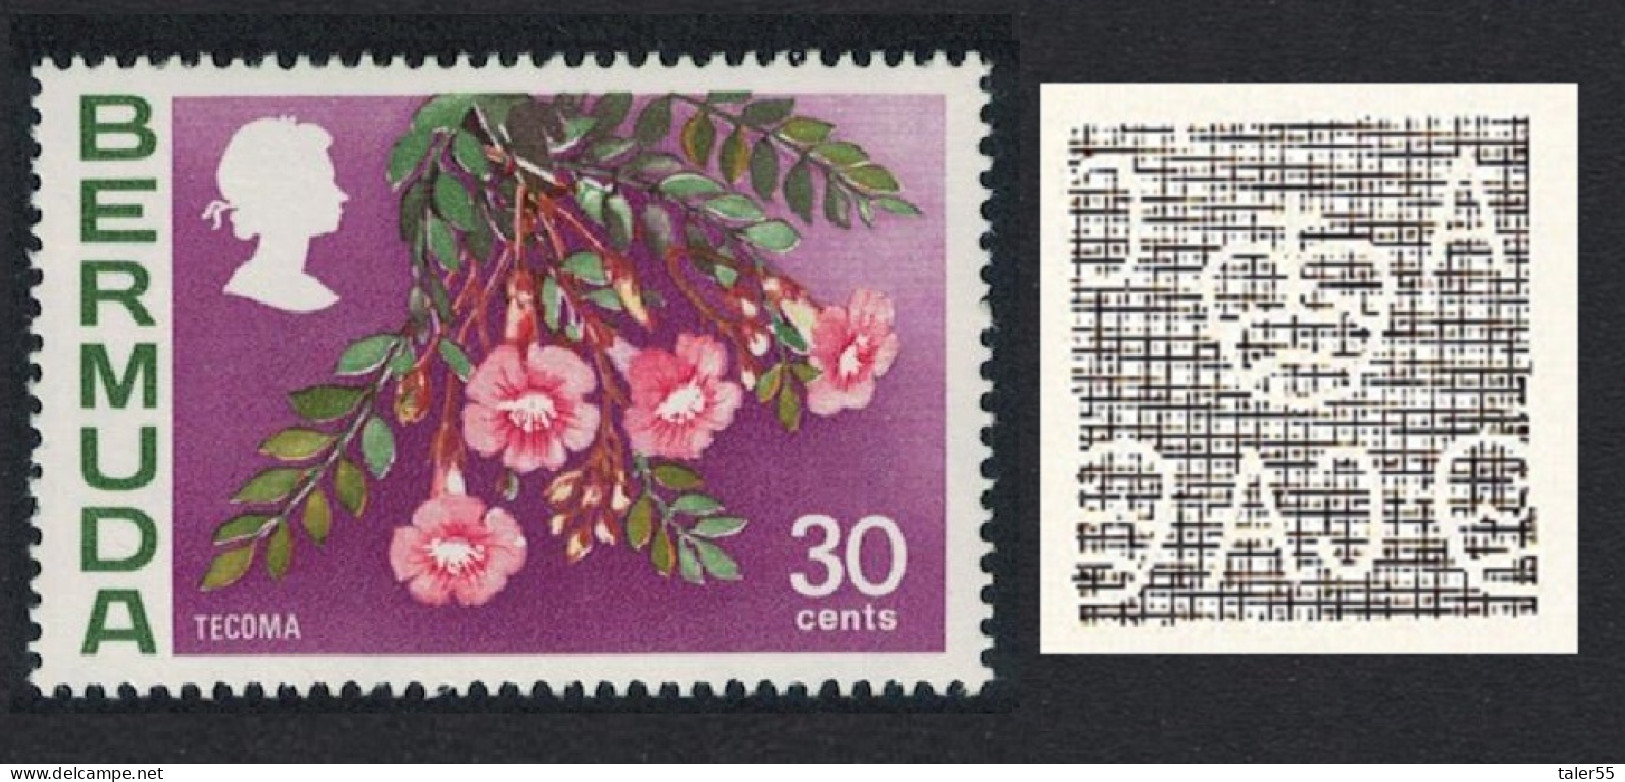 Bermuda Tecoma Flowers 30c Watermark Ww12 Upright 1976 MNH SG#306 - Bermudas